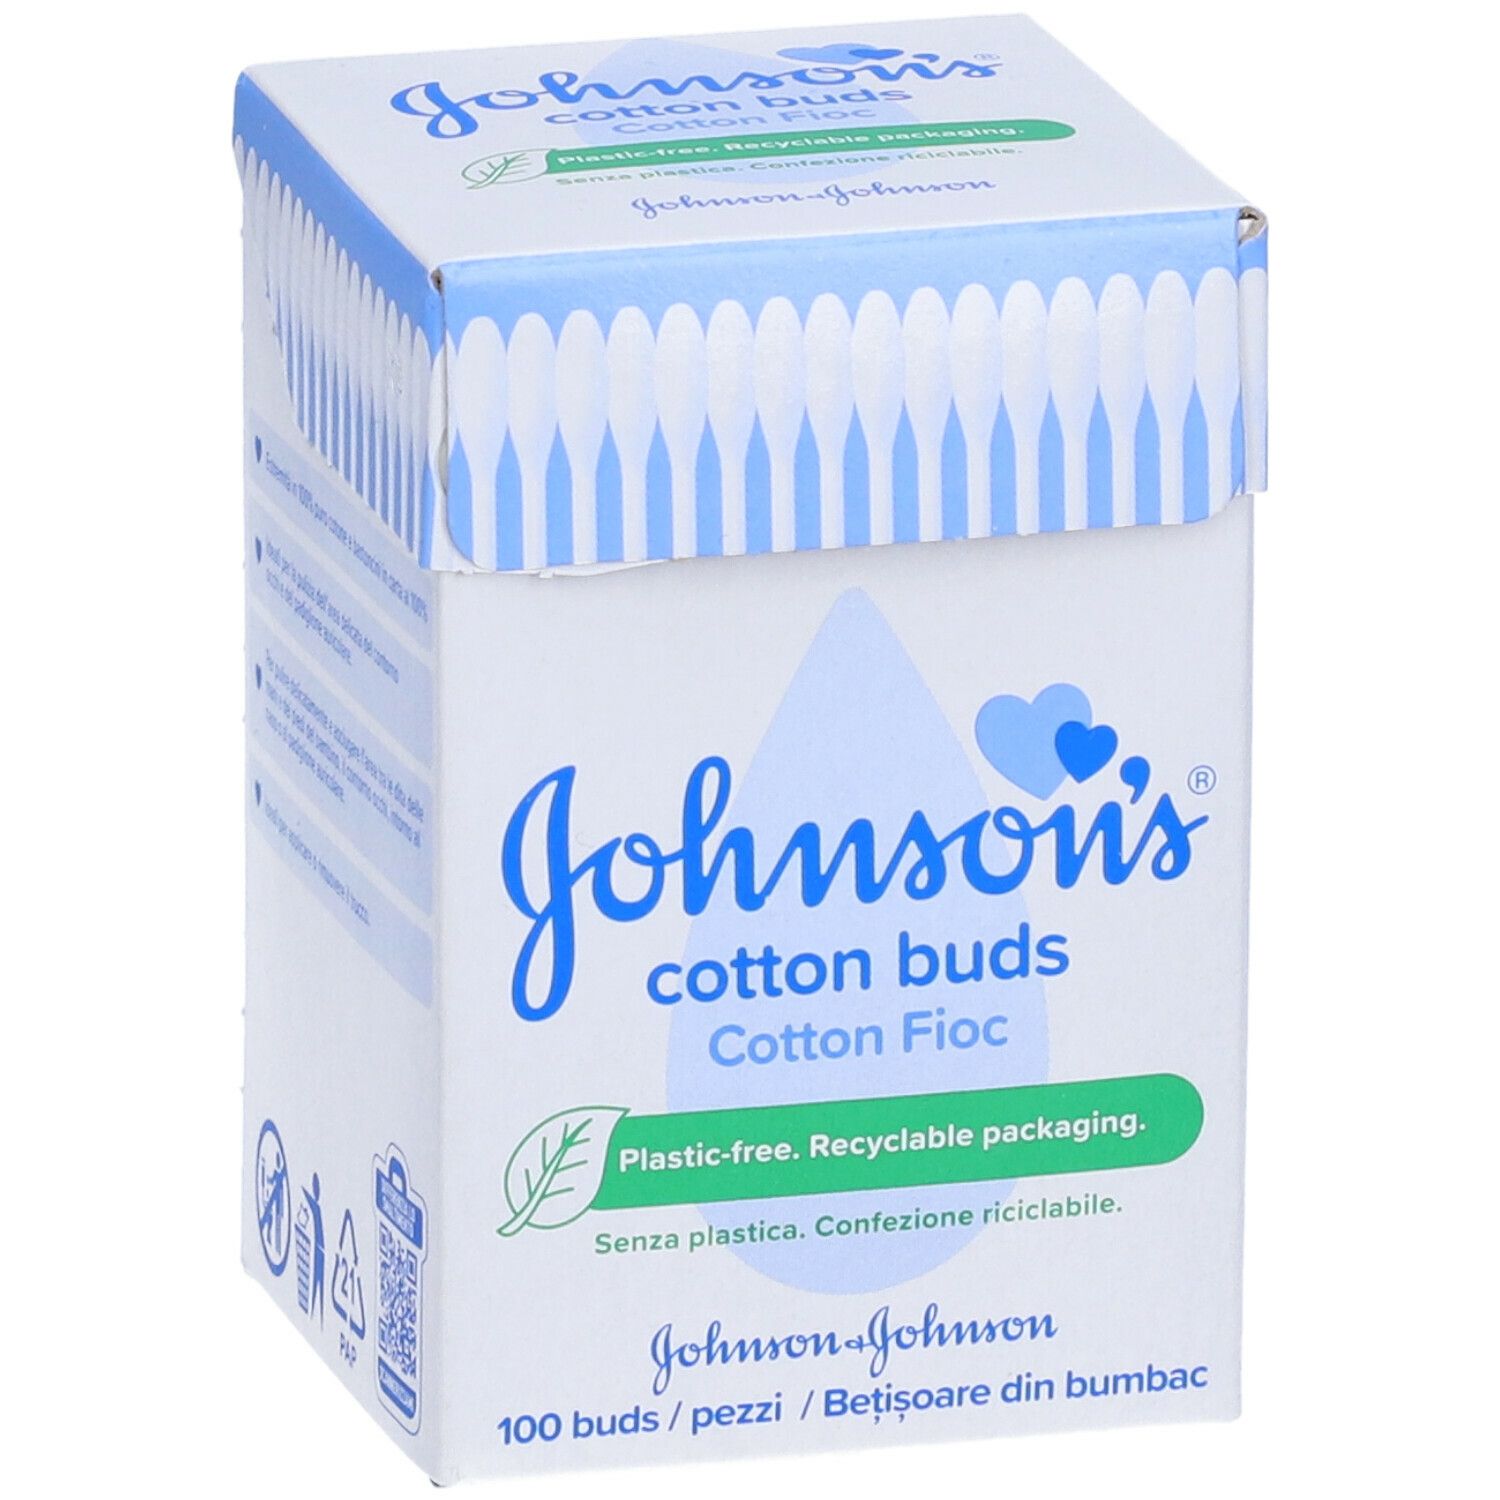 Bocoton - Cotton fioc con limitatore per bambini, 60 pz